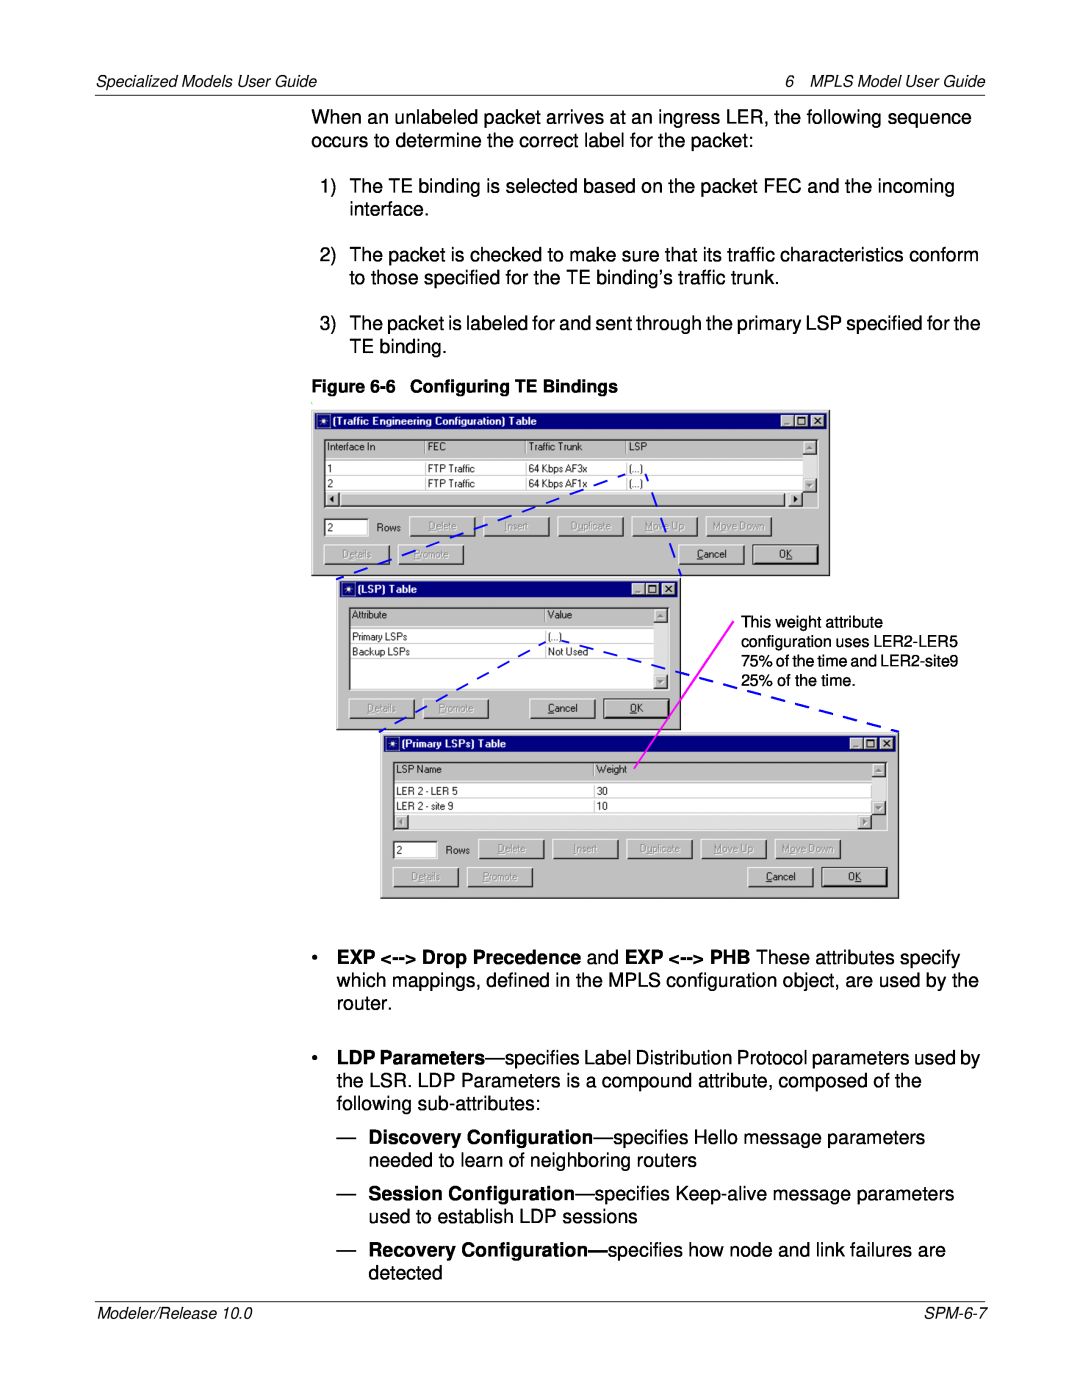 IBM 6 MPLS manual 6 Configuring TE Bindings 